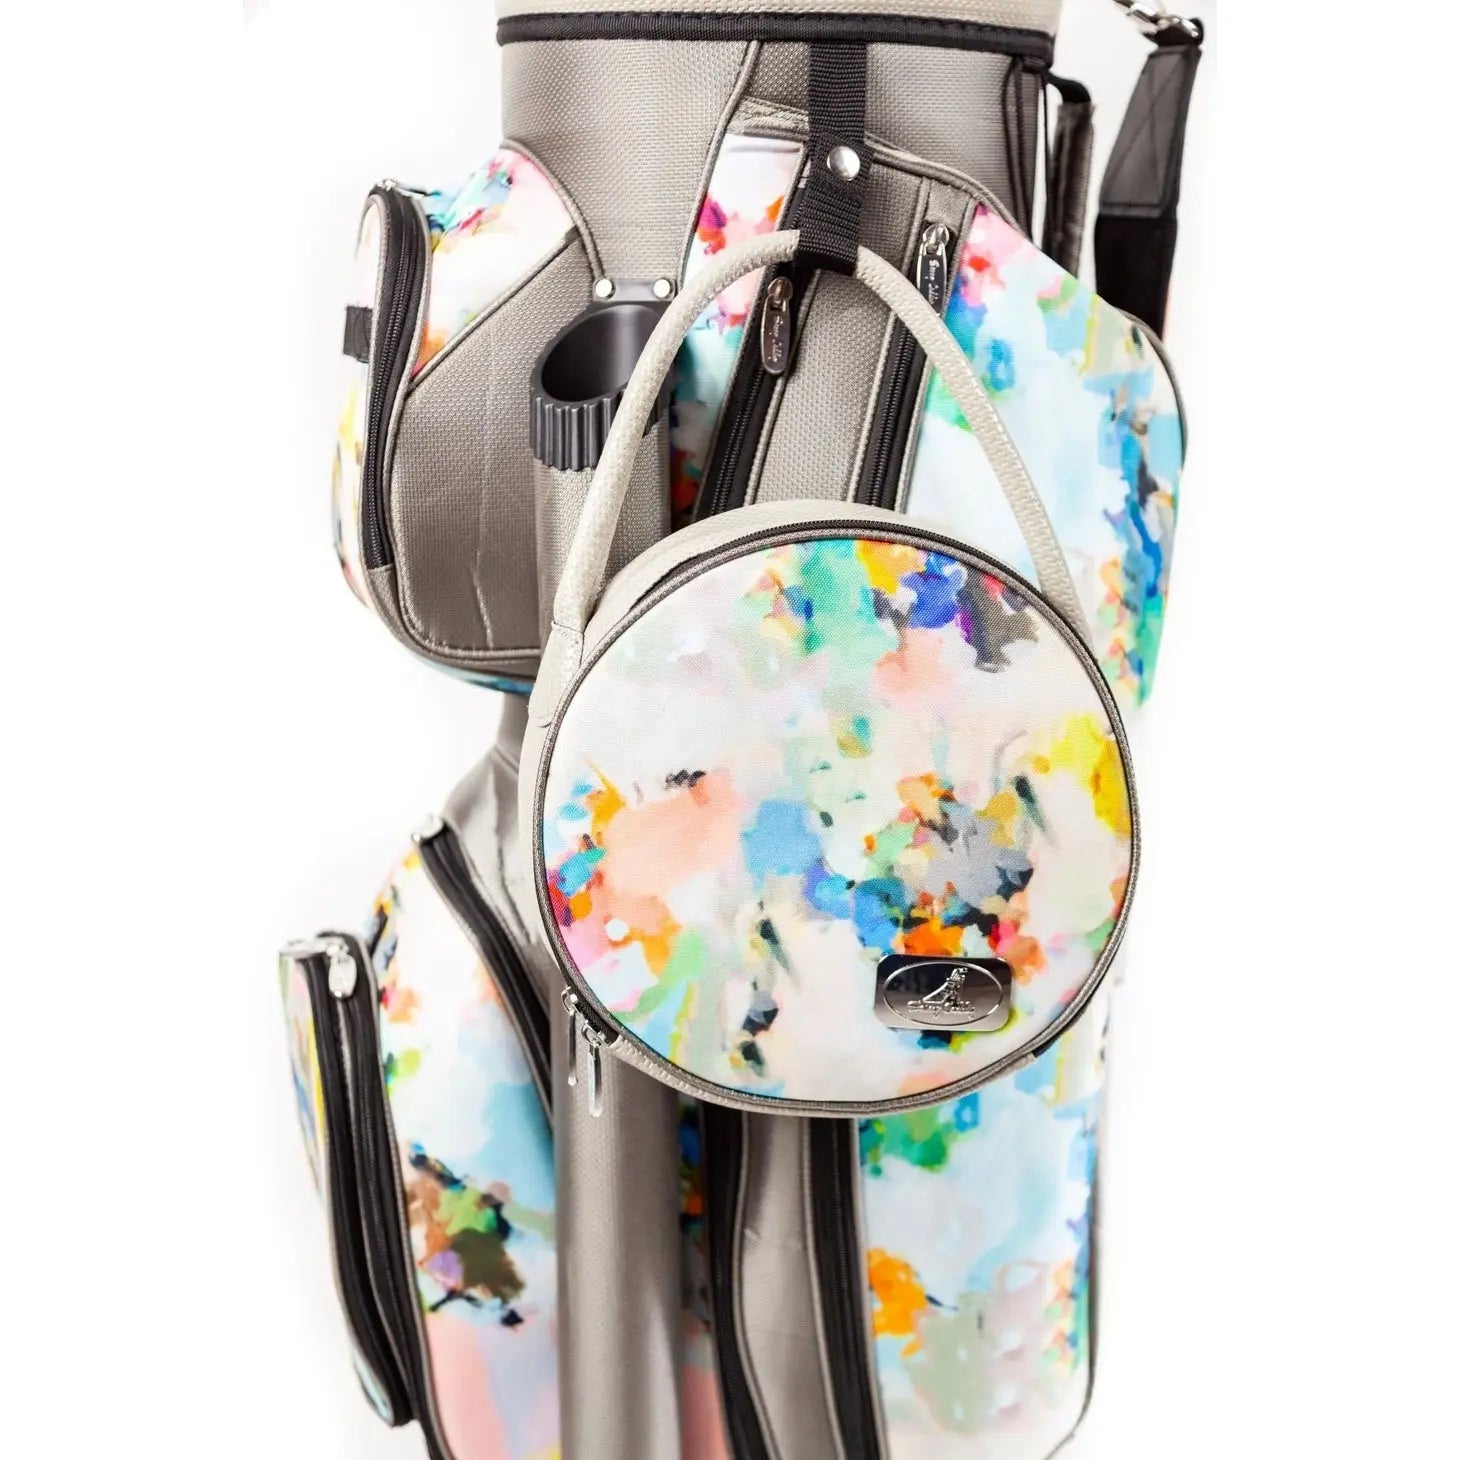 Ladies Golf Bags